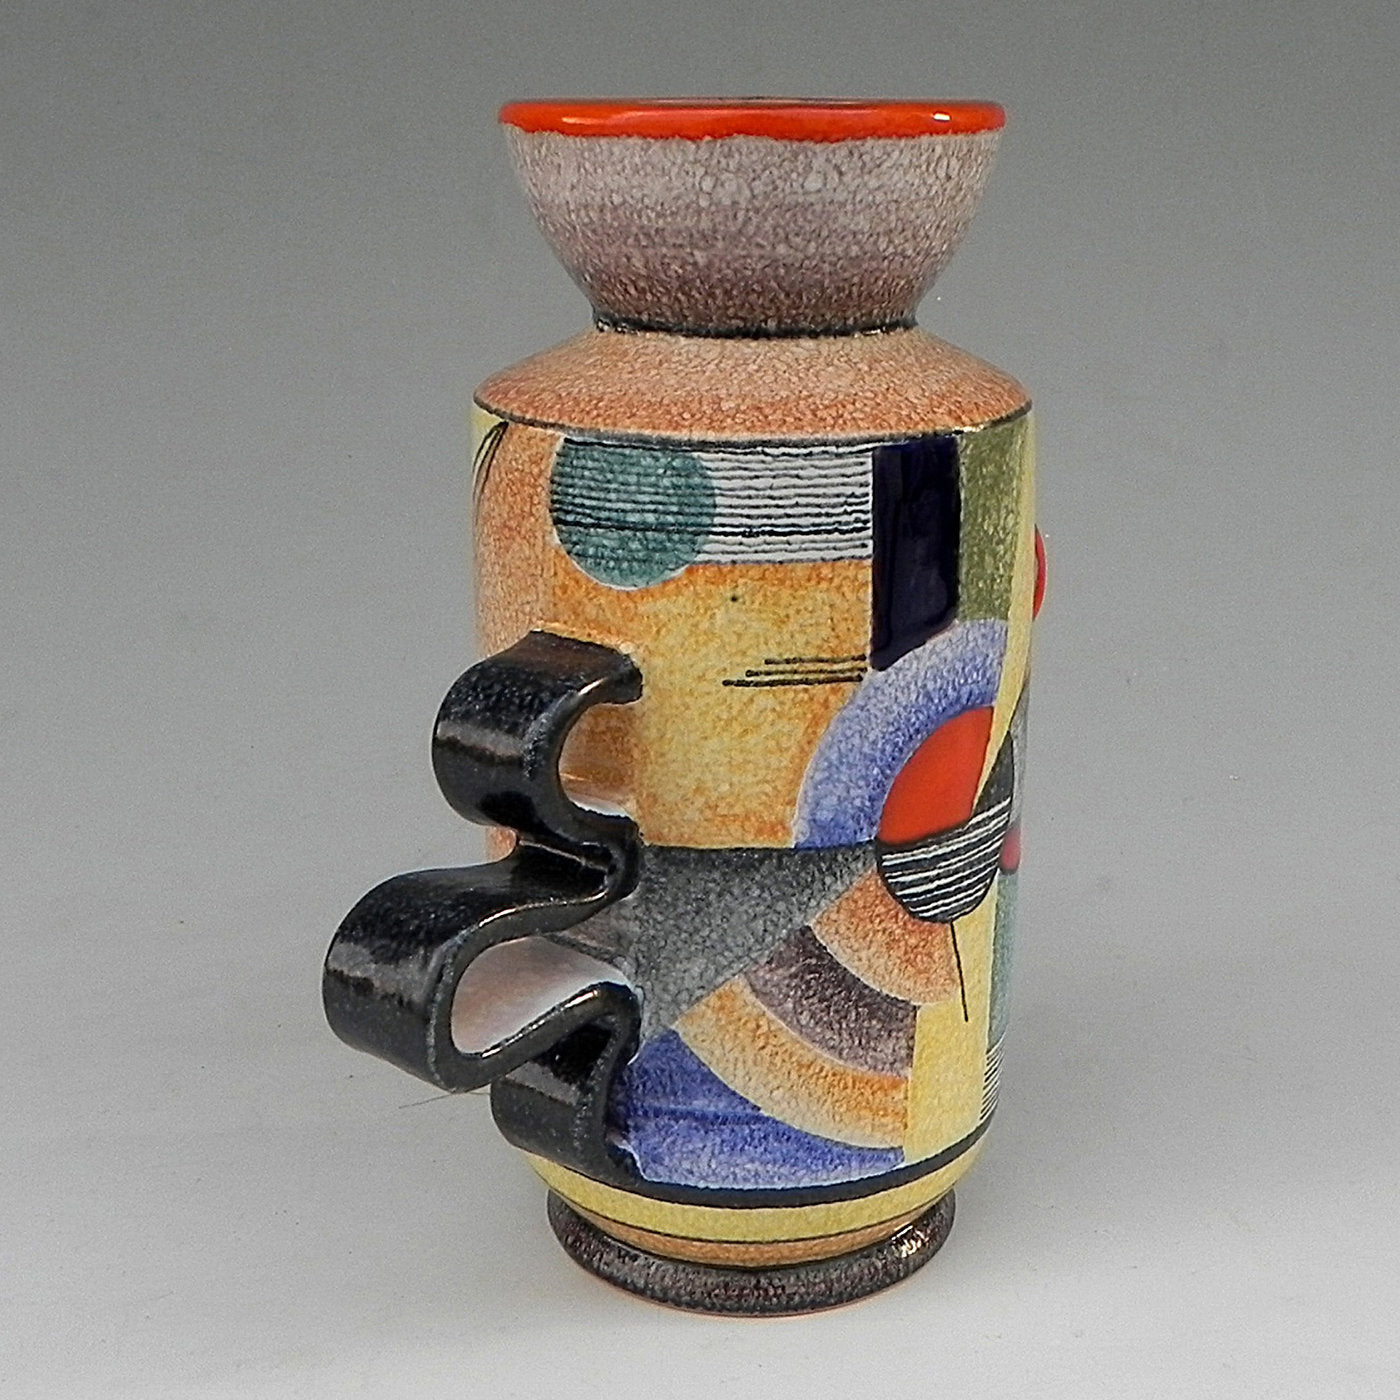 Snello Futurista Ceramic Vase - Alternative view 3